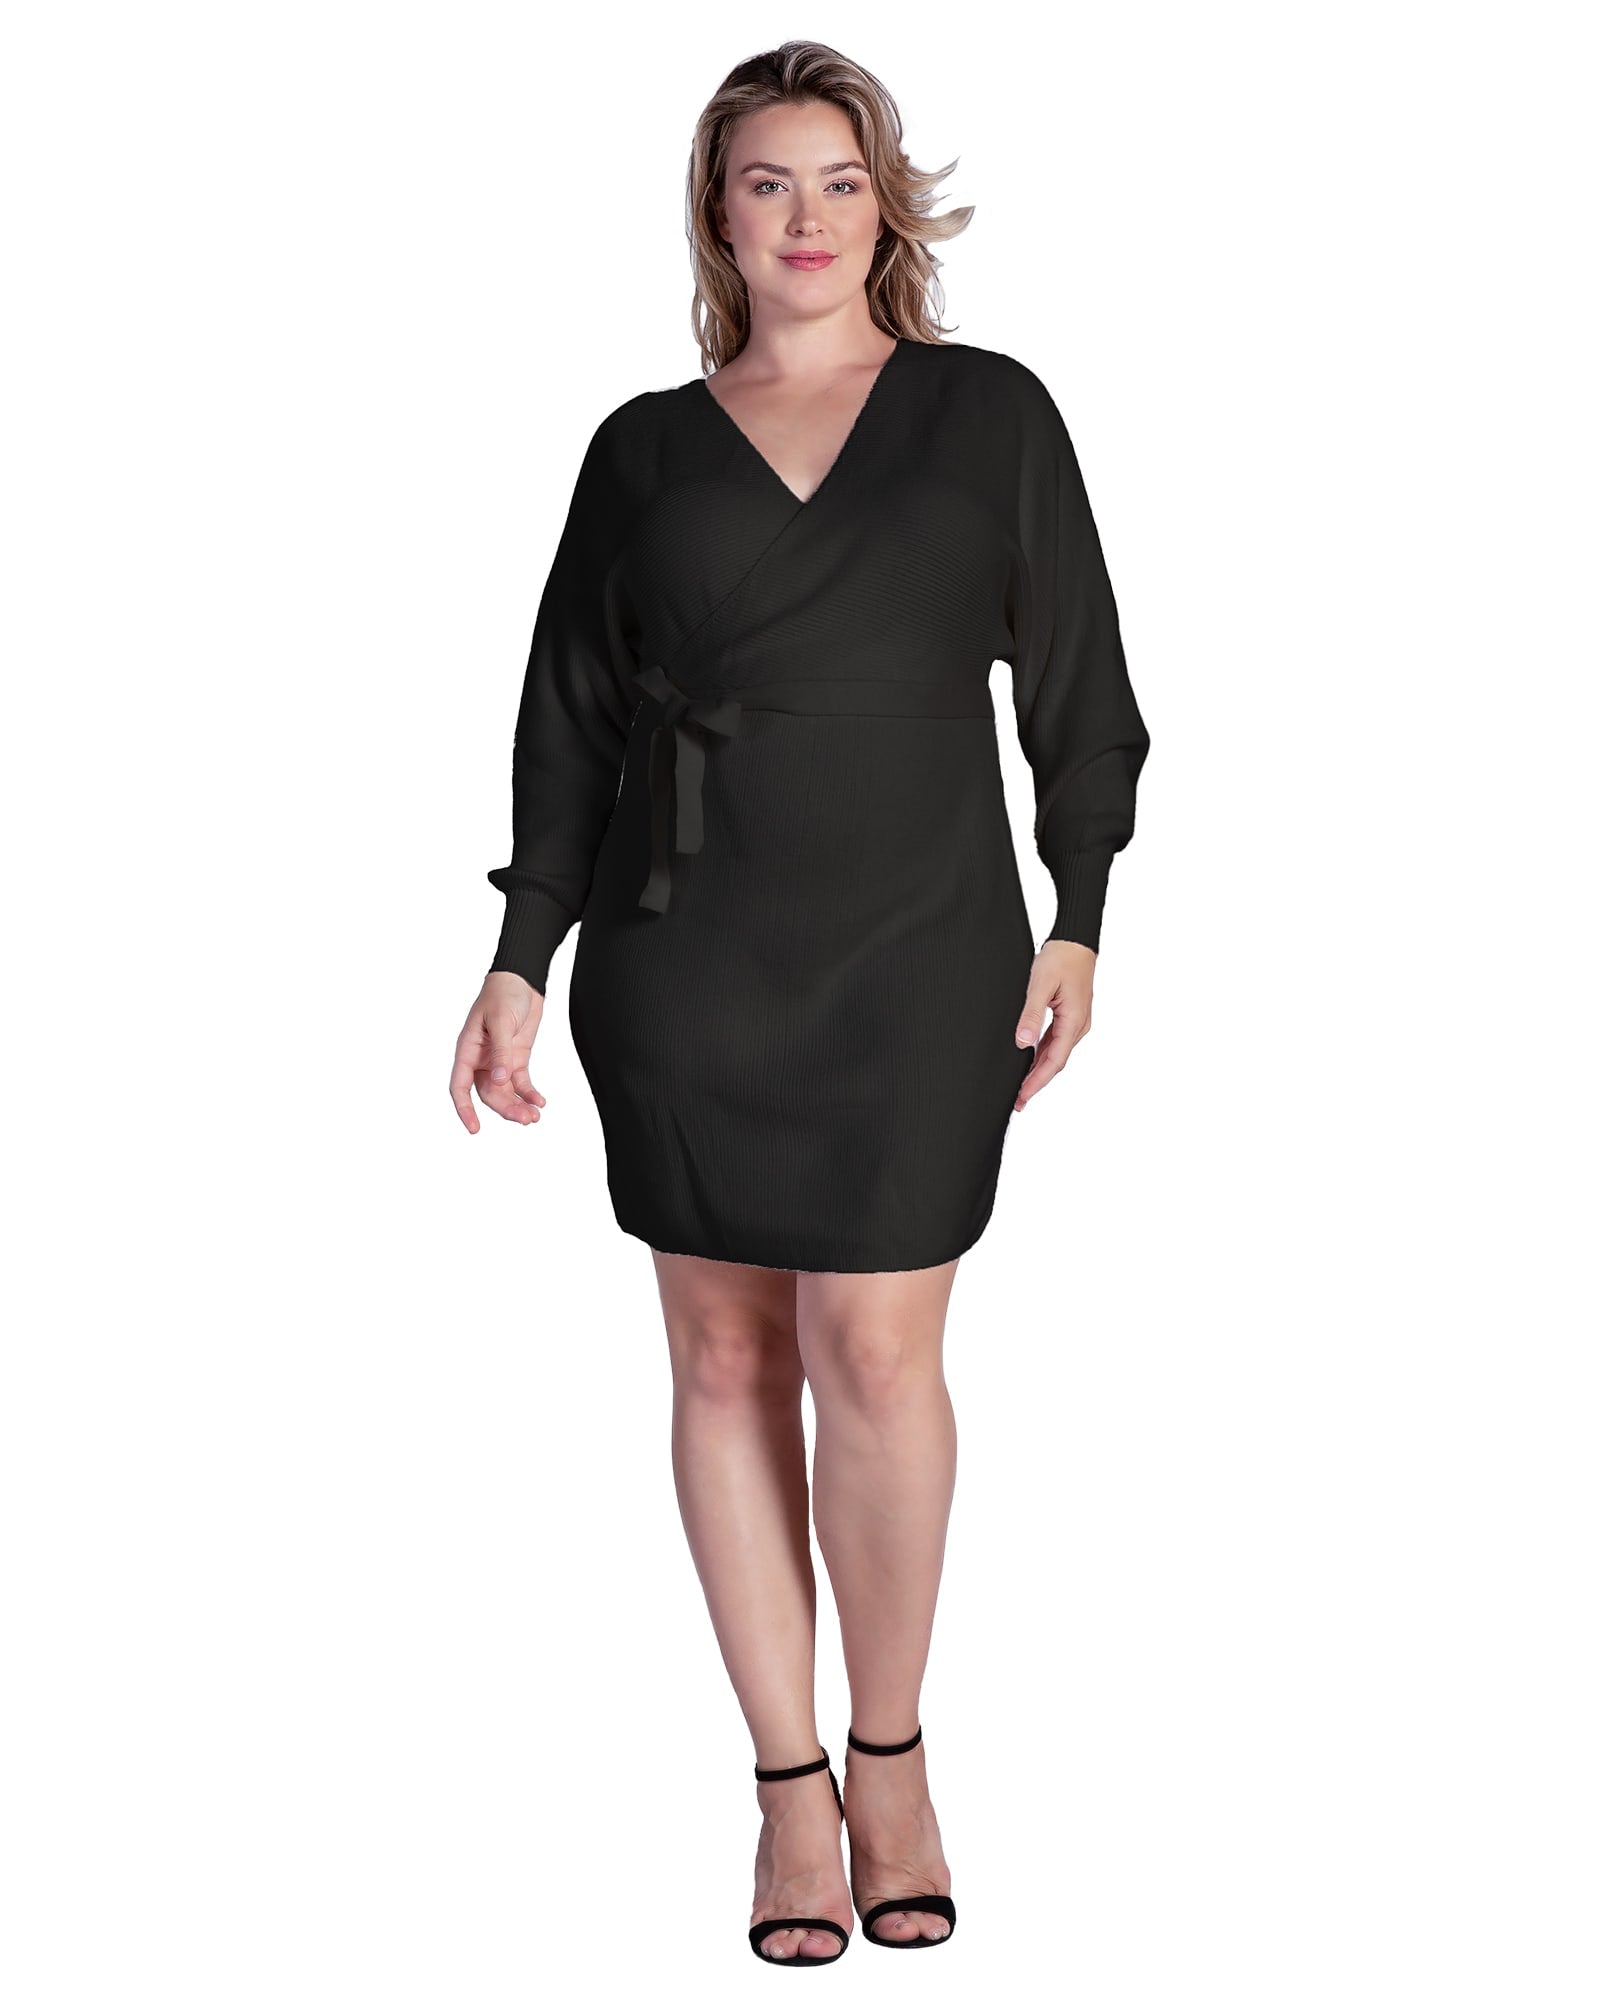 Women's Plus Size V-Back Full Sleeve Sweater Knit Mini Dress | Black